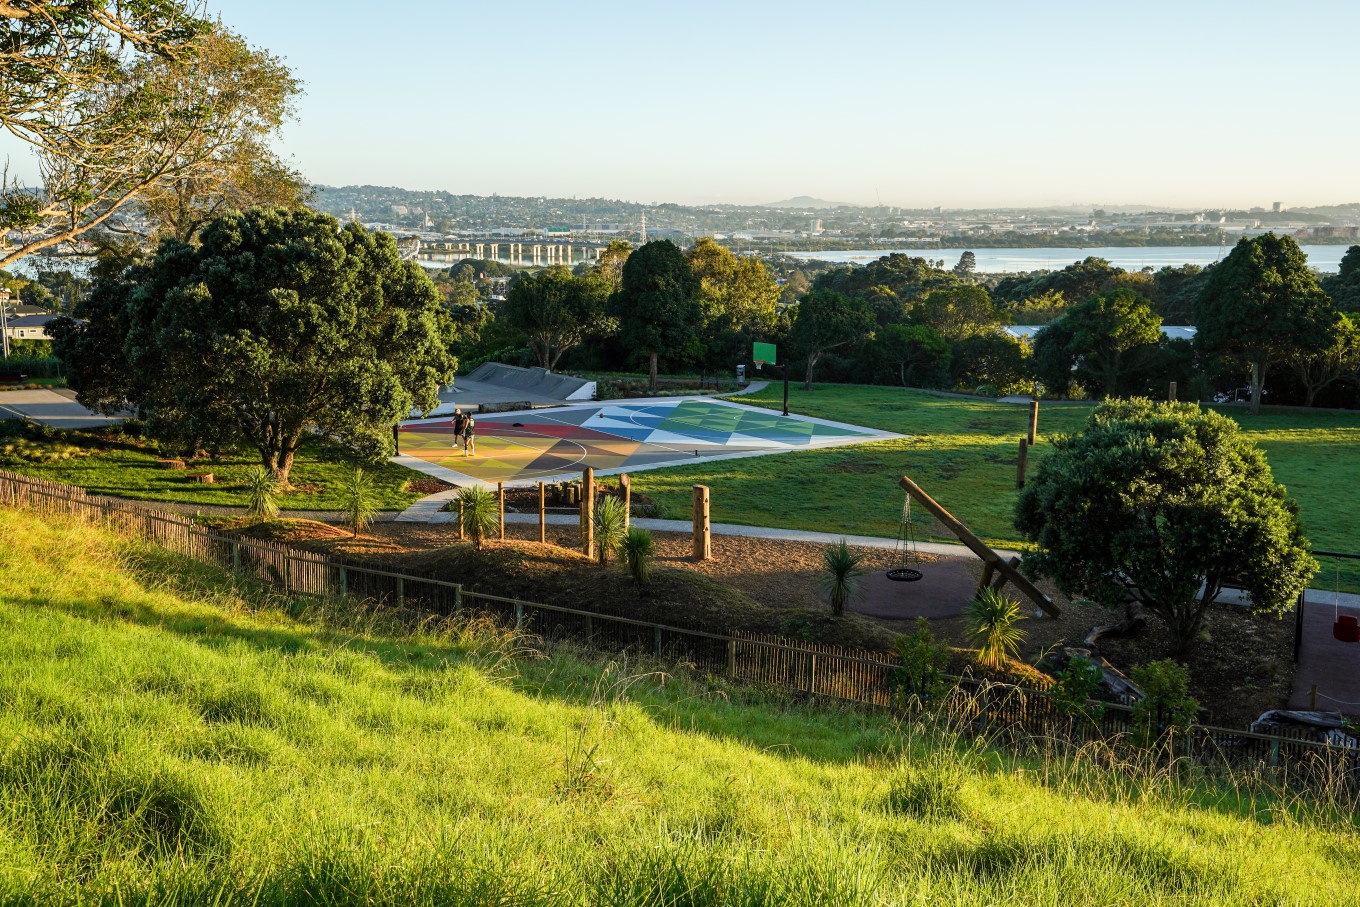 The whānau ātea at Te Pane o Mataoho / Te Ara Pueru / Māngere Mountain includes a māra hūpara (traditional Māori playground) and a basketball court.